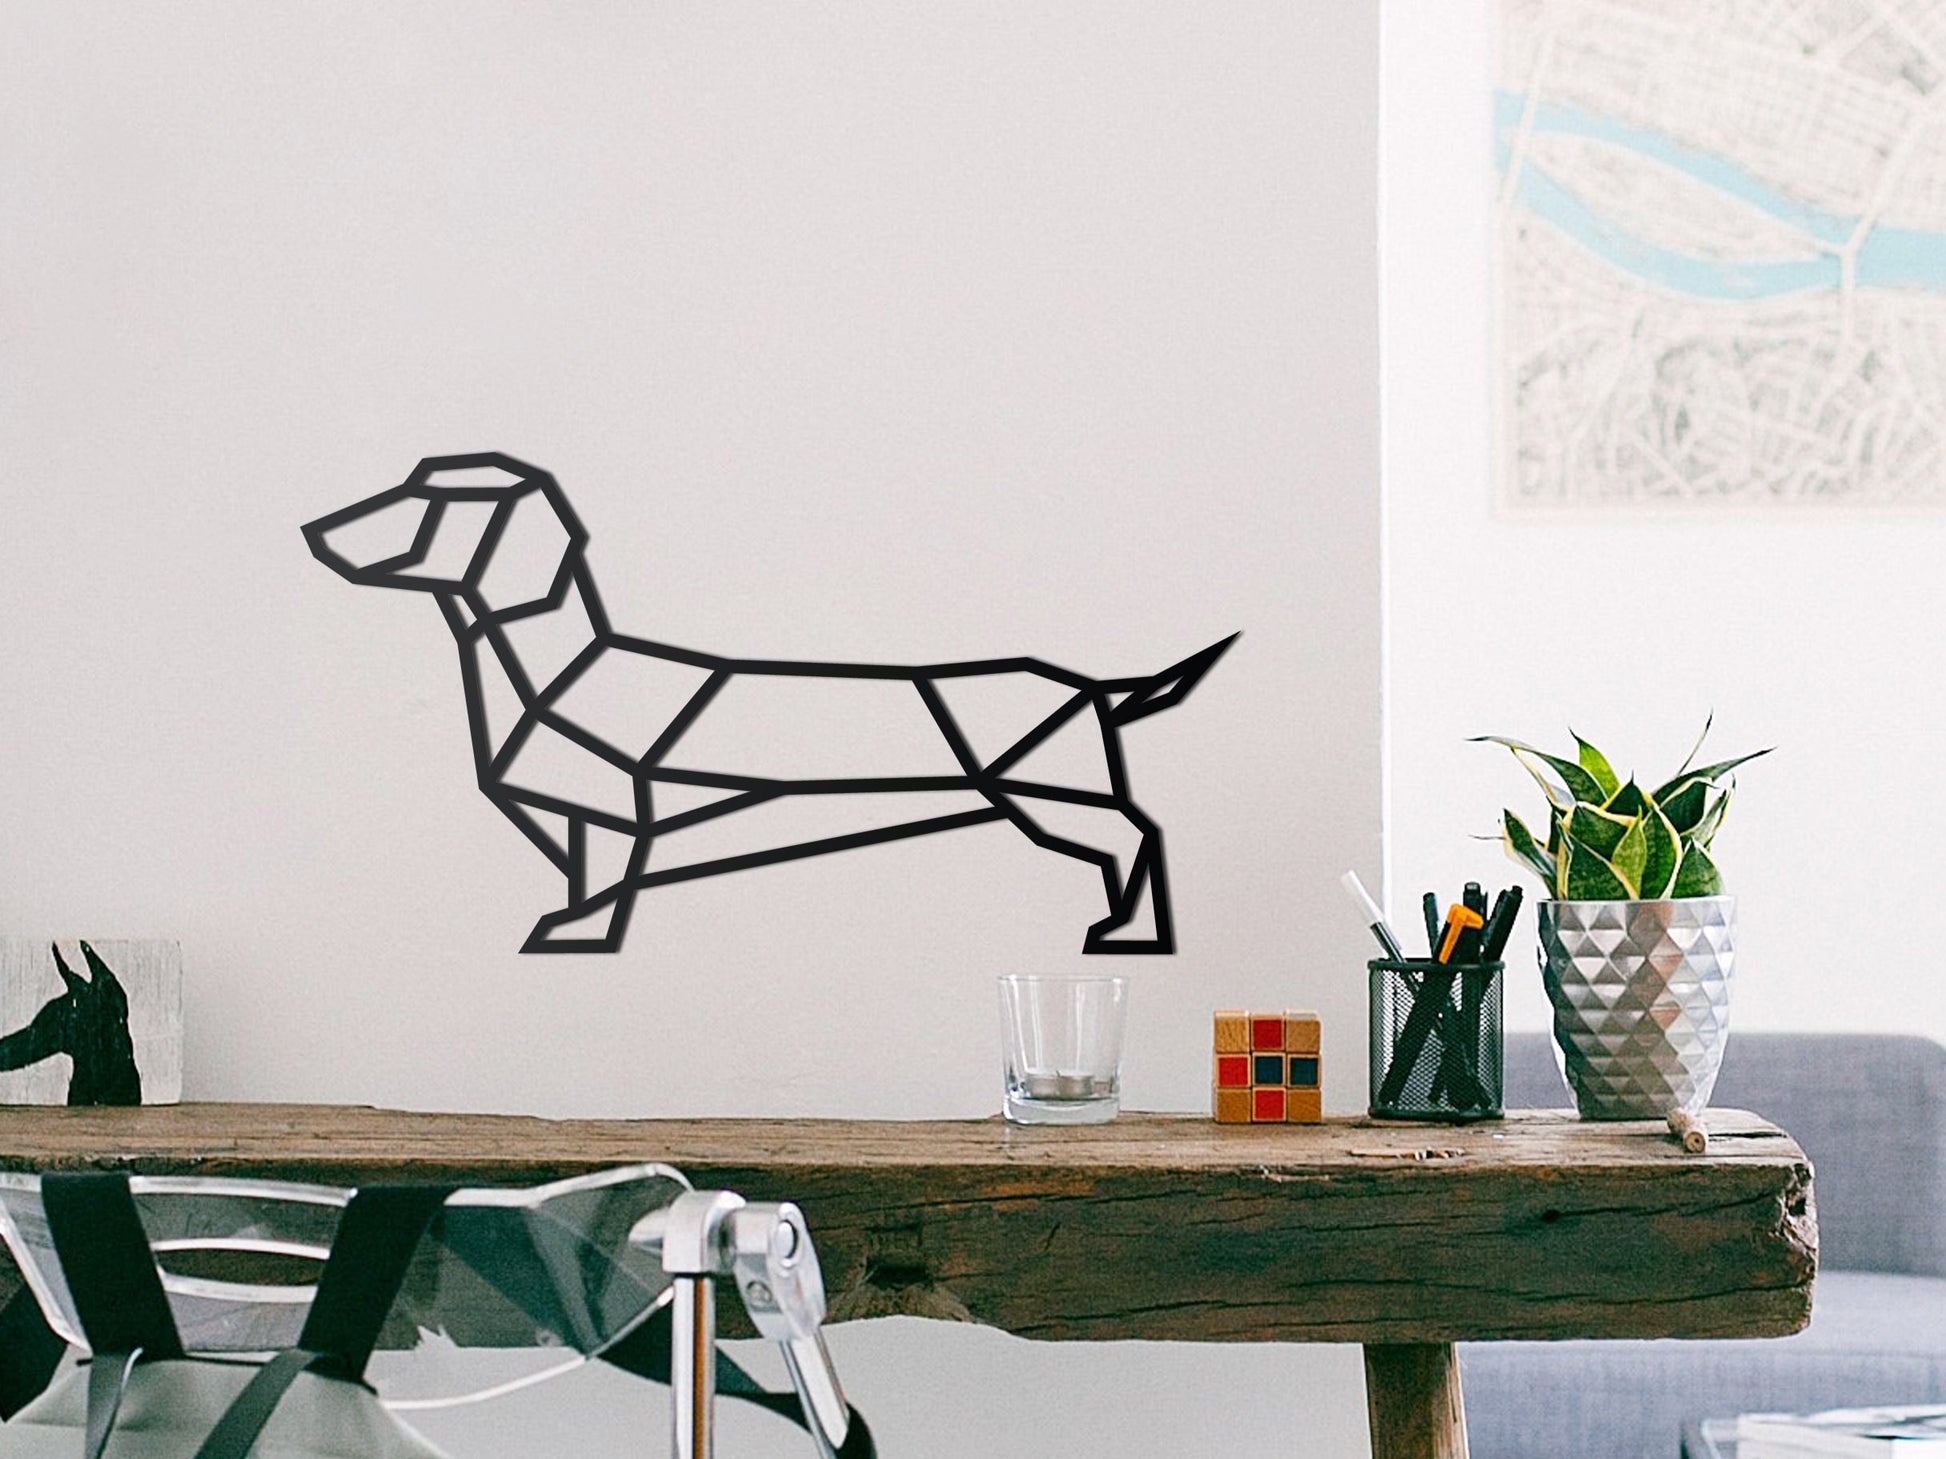 Wienerdog dog Sausage - – Dachshund Wooden decoration - Geometric SOLID IDEA wall -